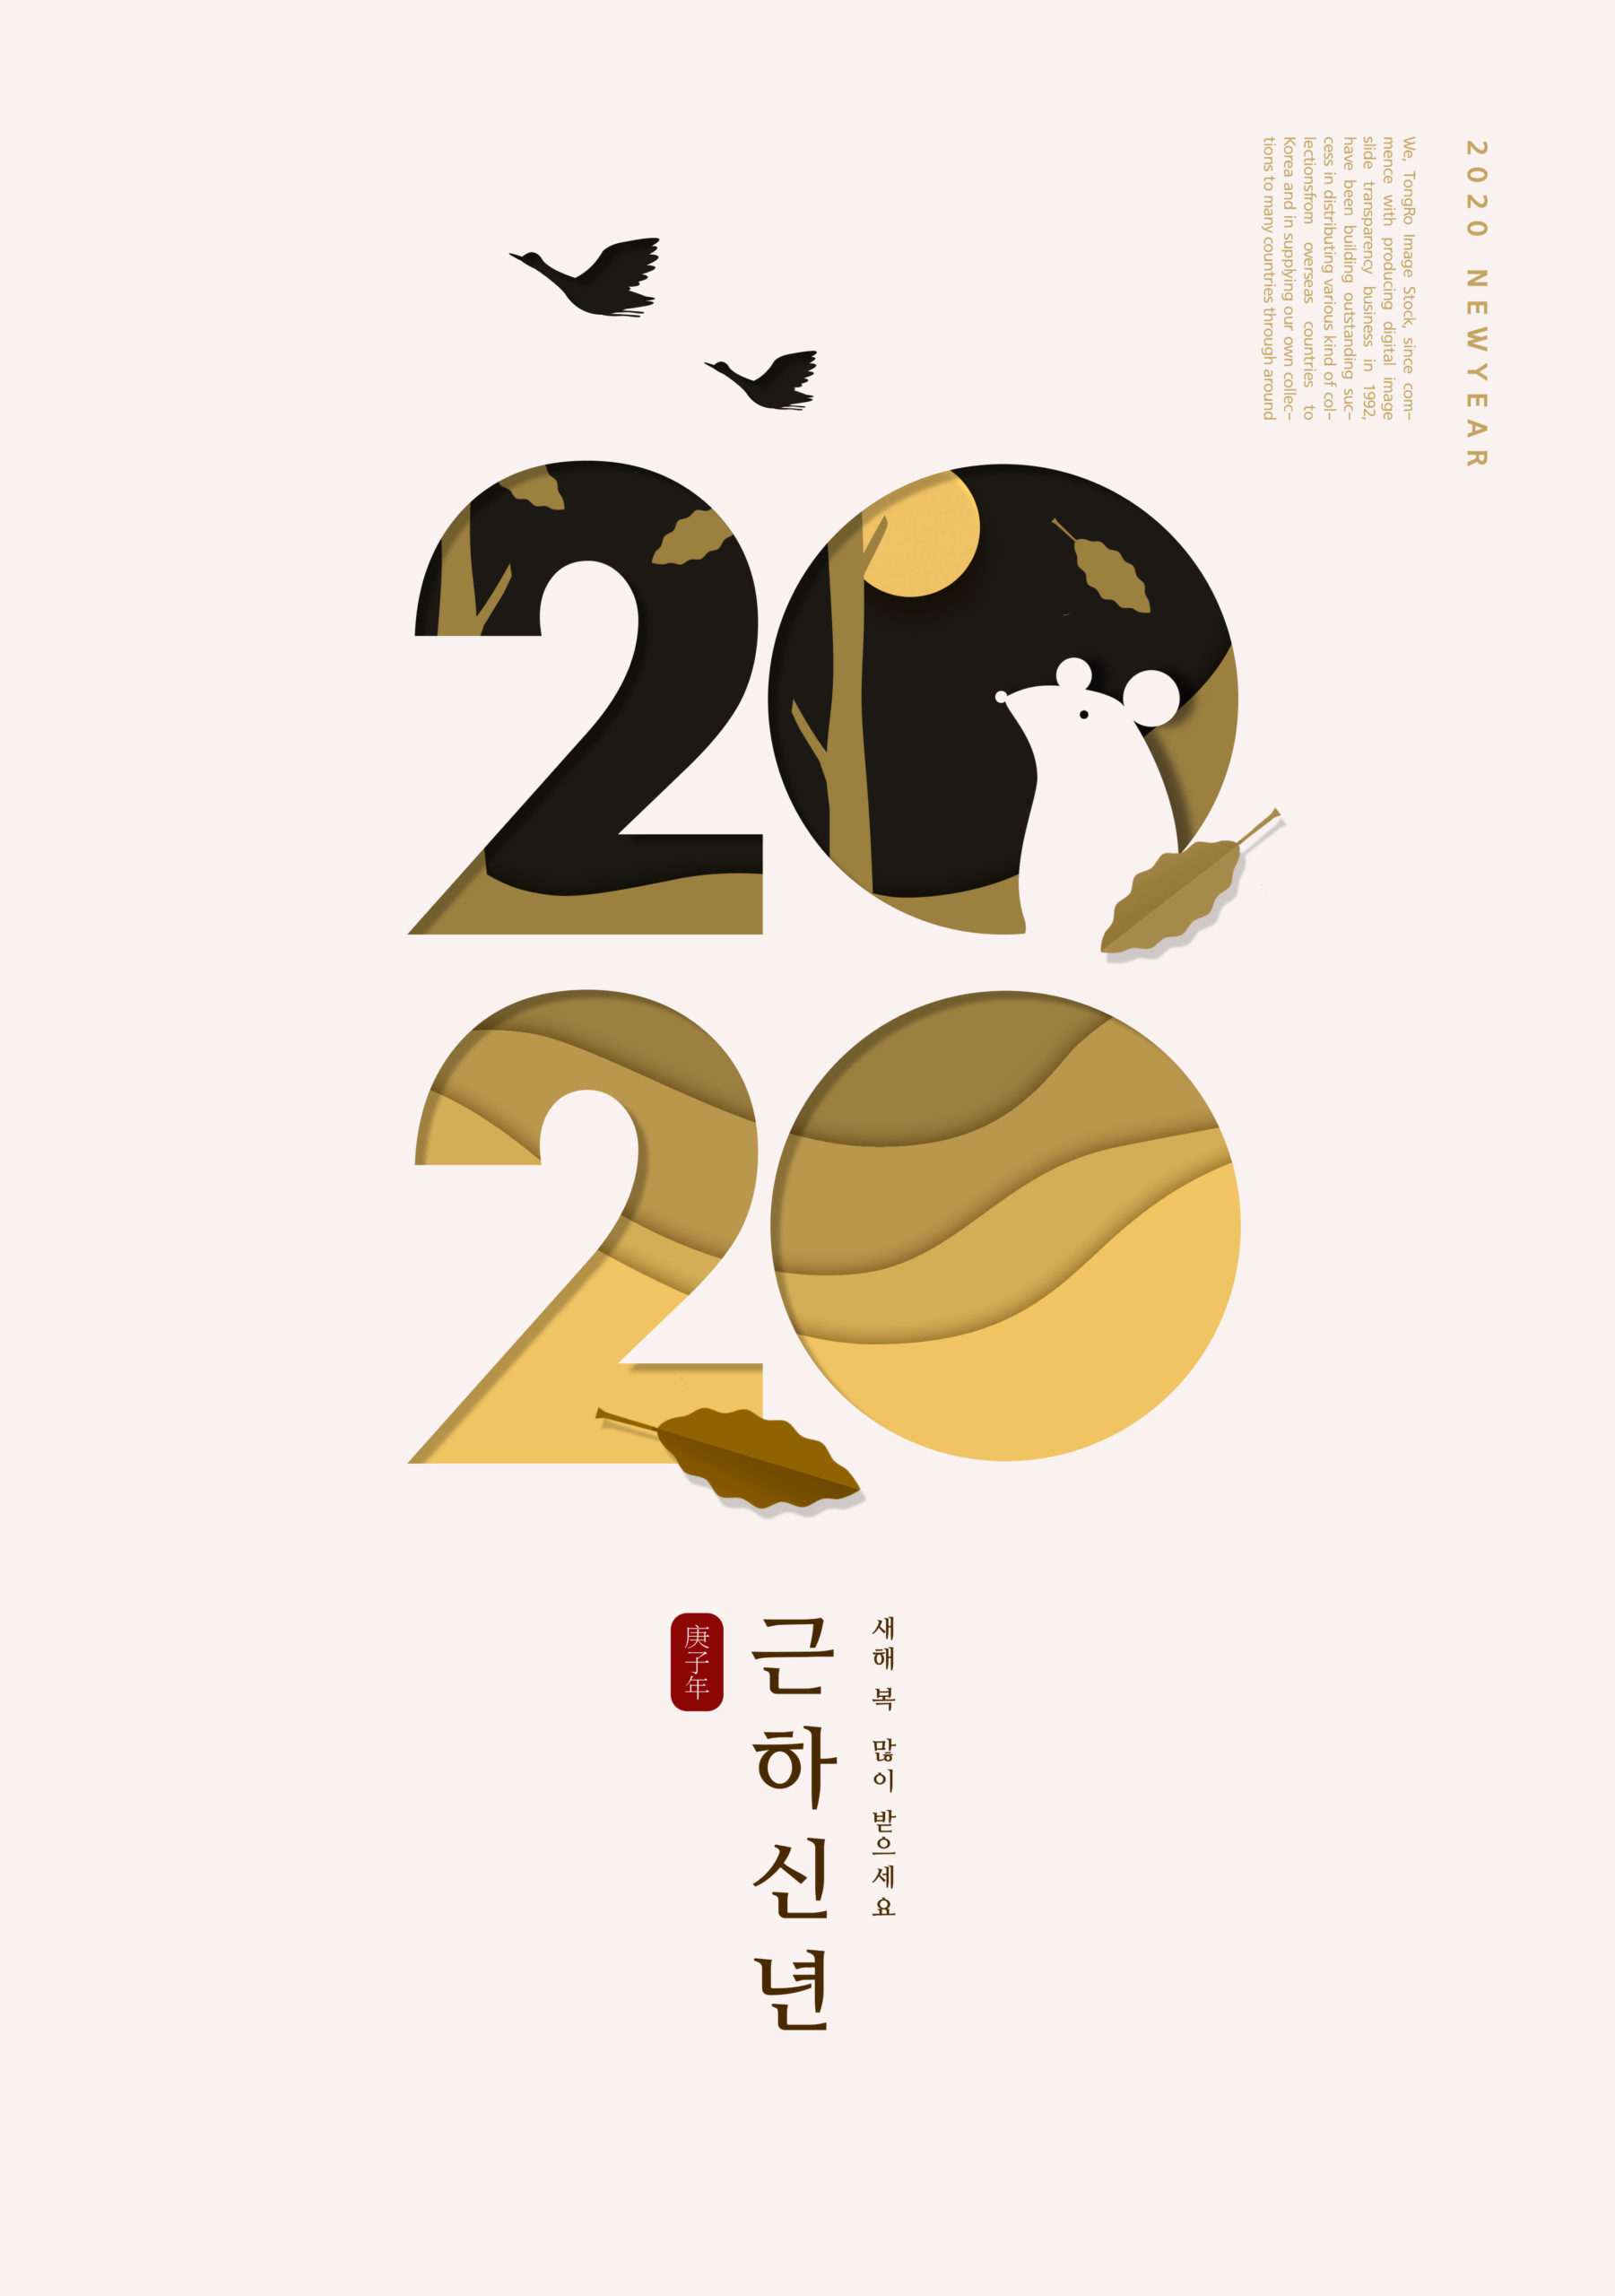 2020鼠年简约古典设计风格海报PSD素材普贤居精选插图